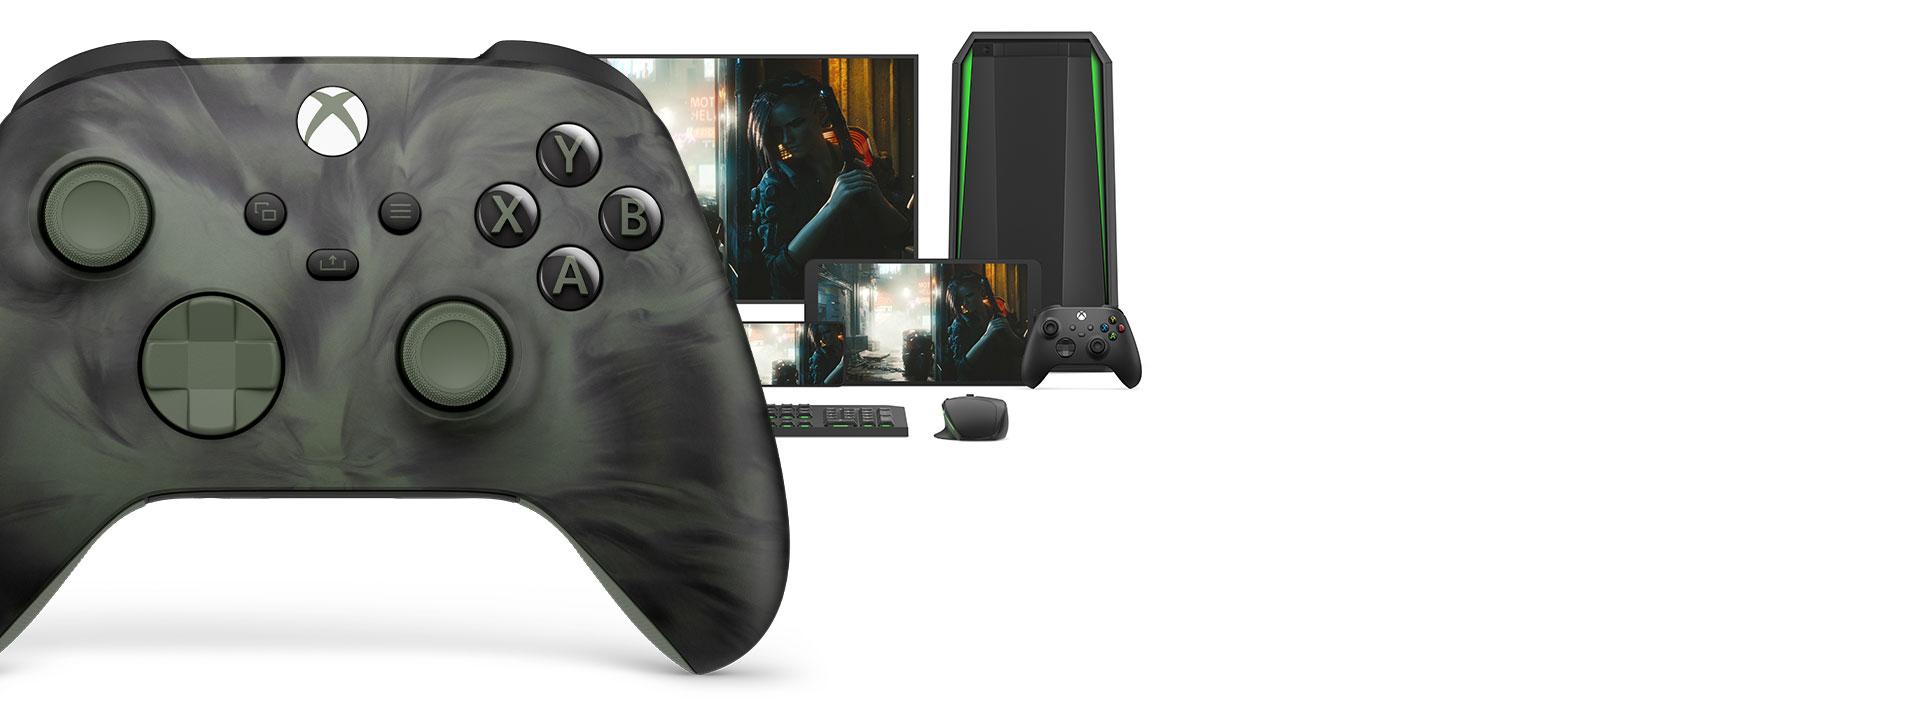 Vista frontal del lado derecho del Control inalámbrico Xbox: Edición especial Nocturnal Vapor con distintas plataformas de juego detrás de él.